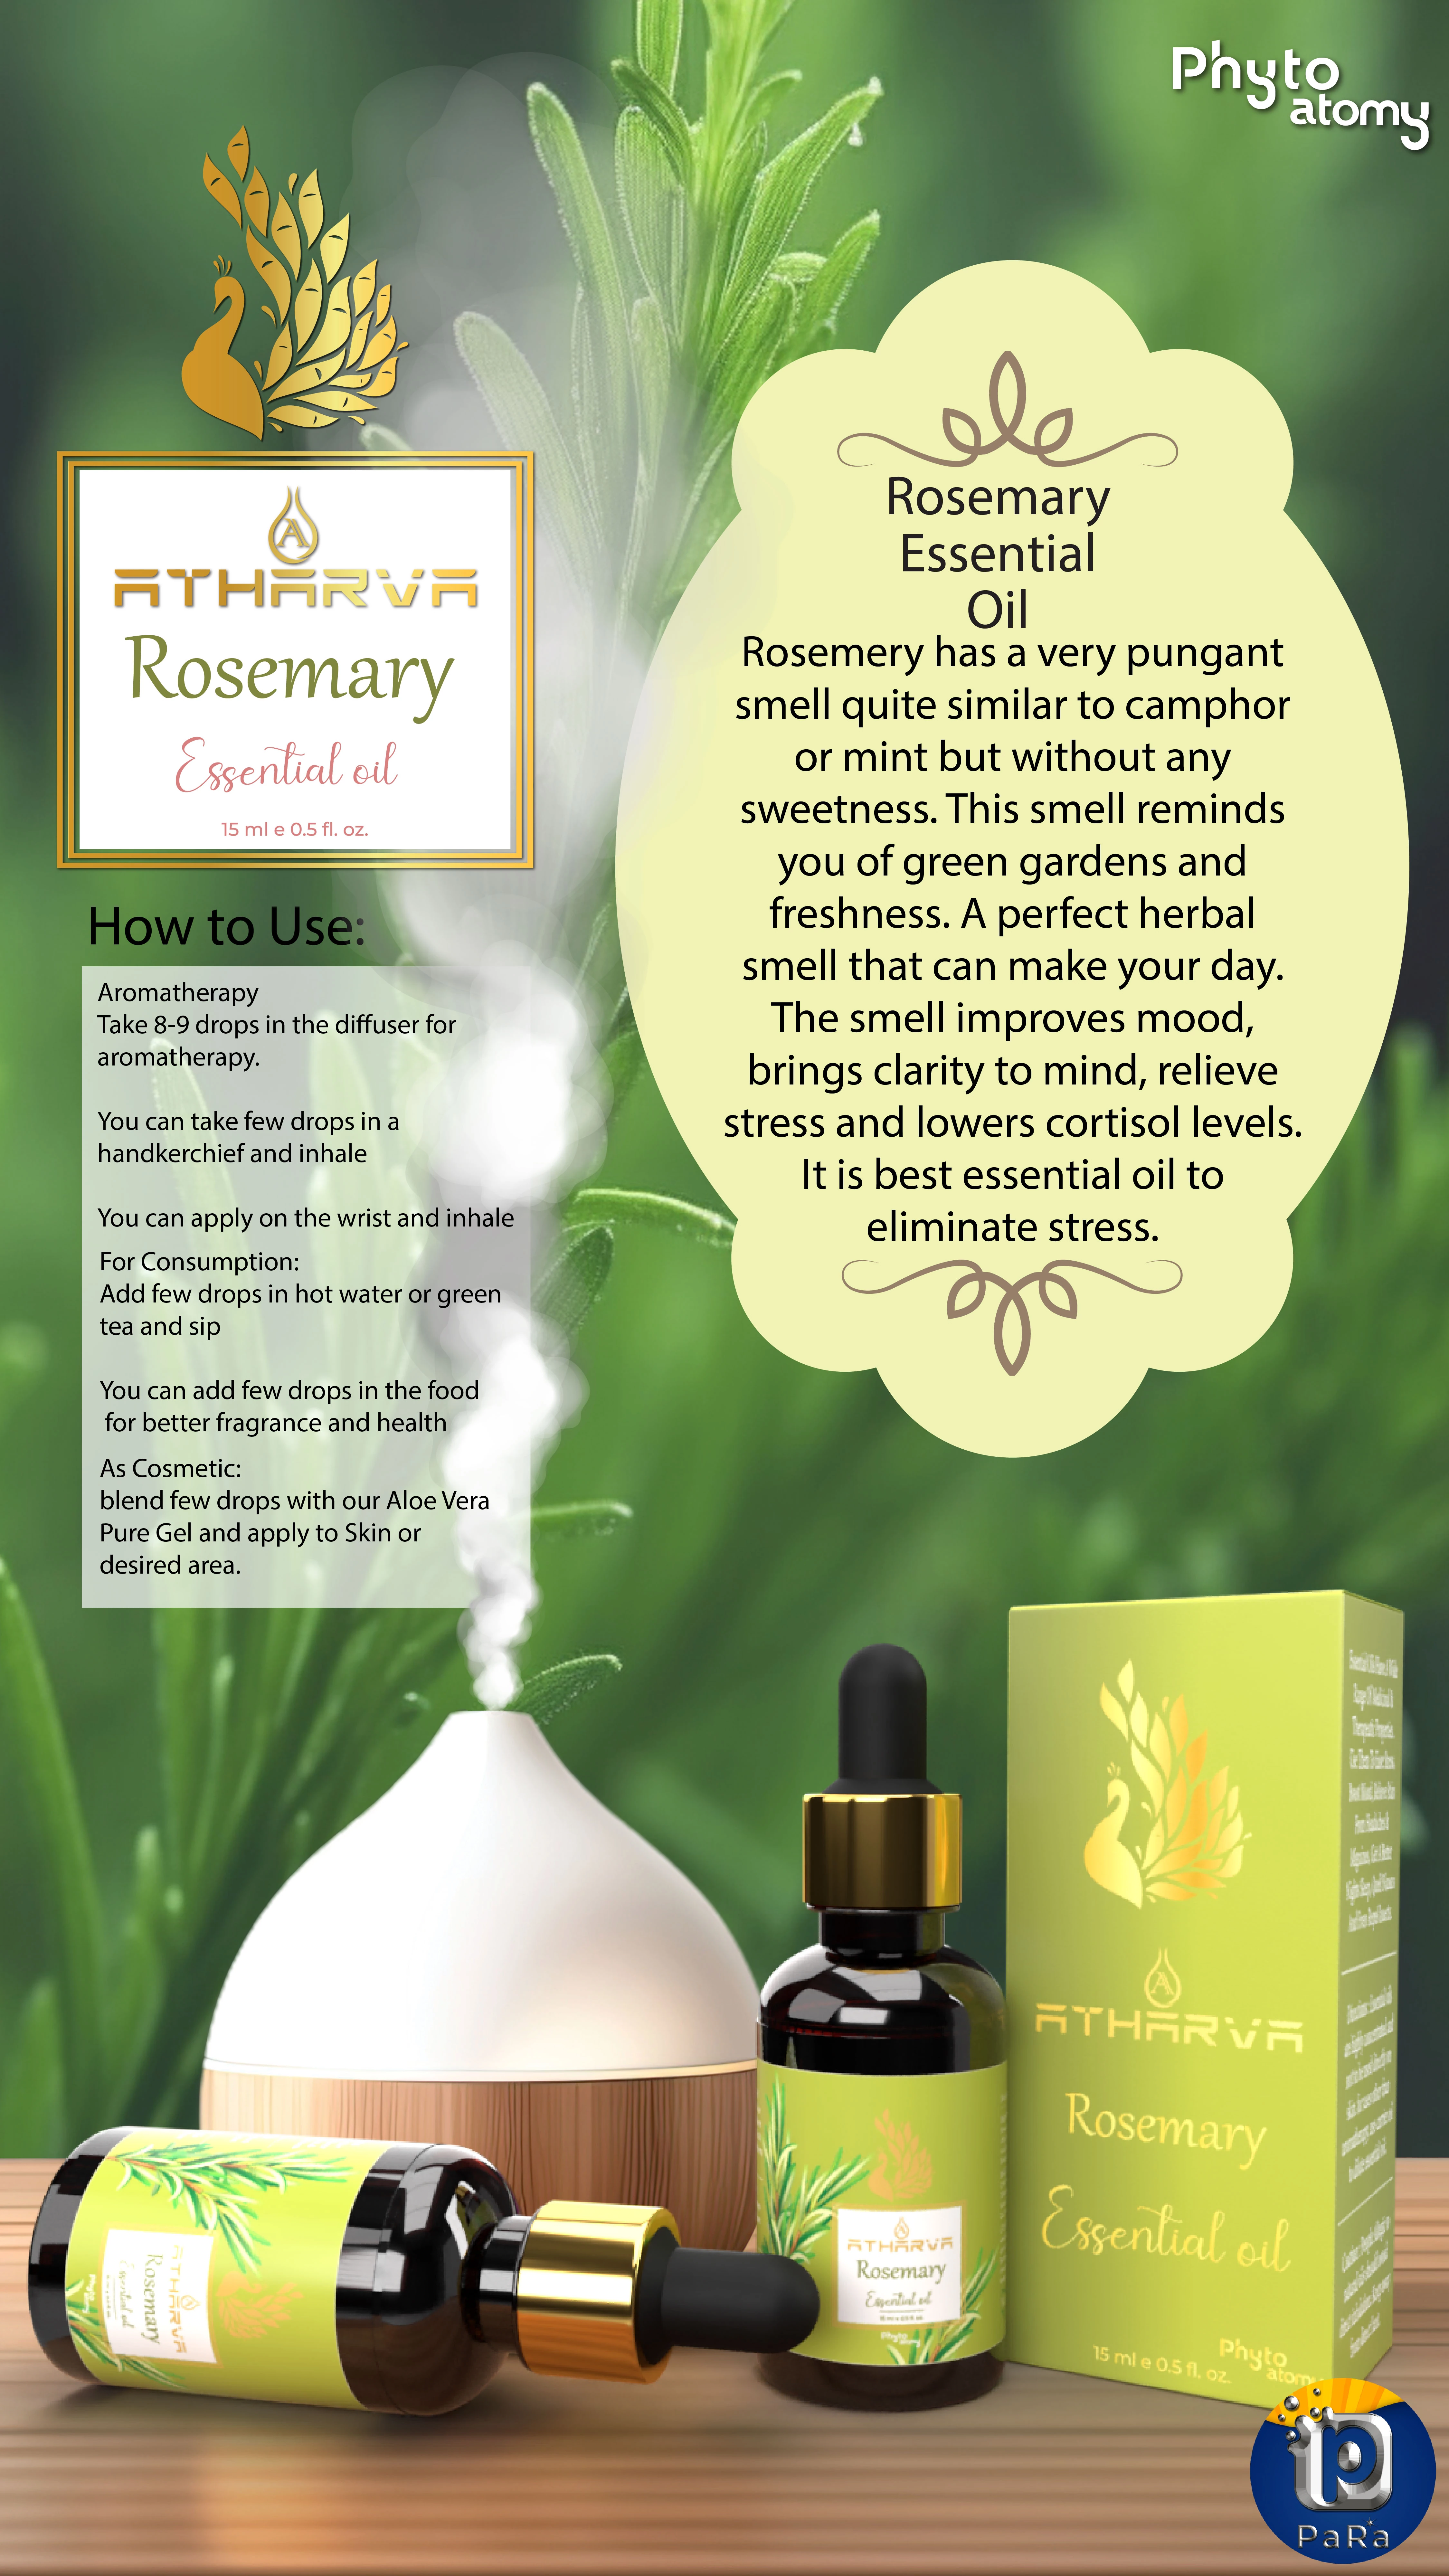 RBV B2B Atharva Rosemary Essential Oil (15ml)-12 Pcs.